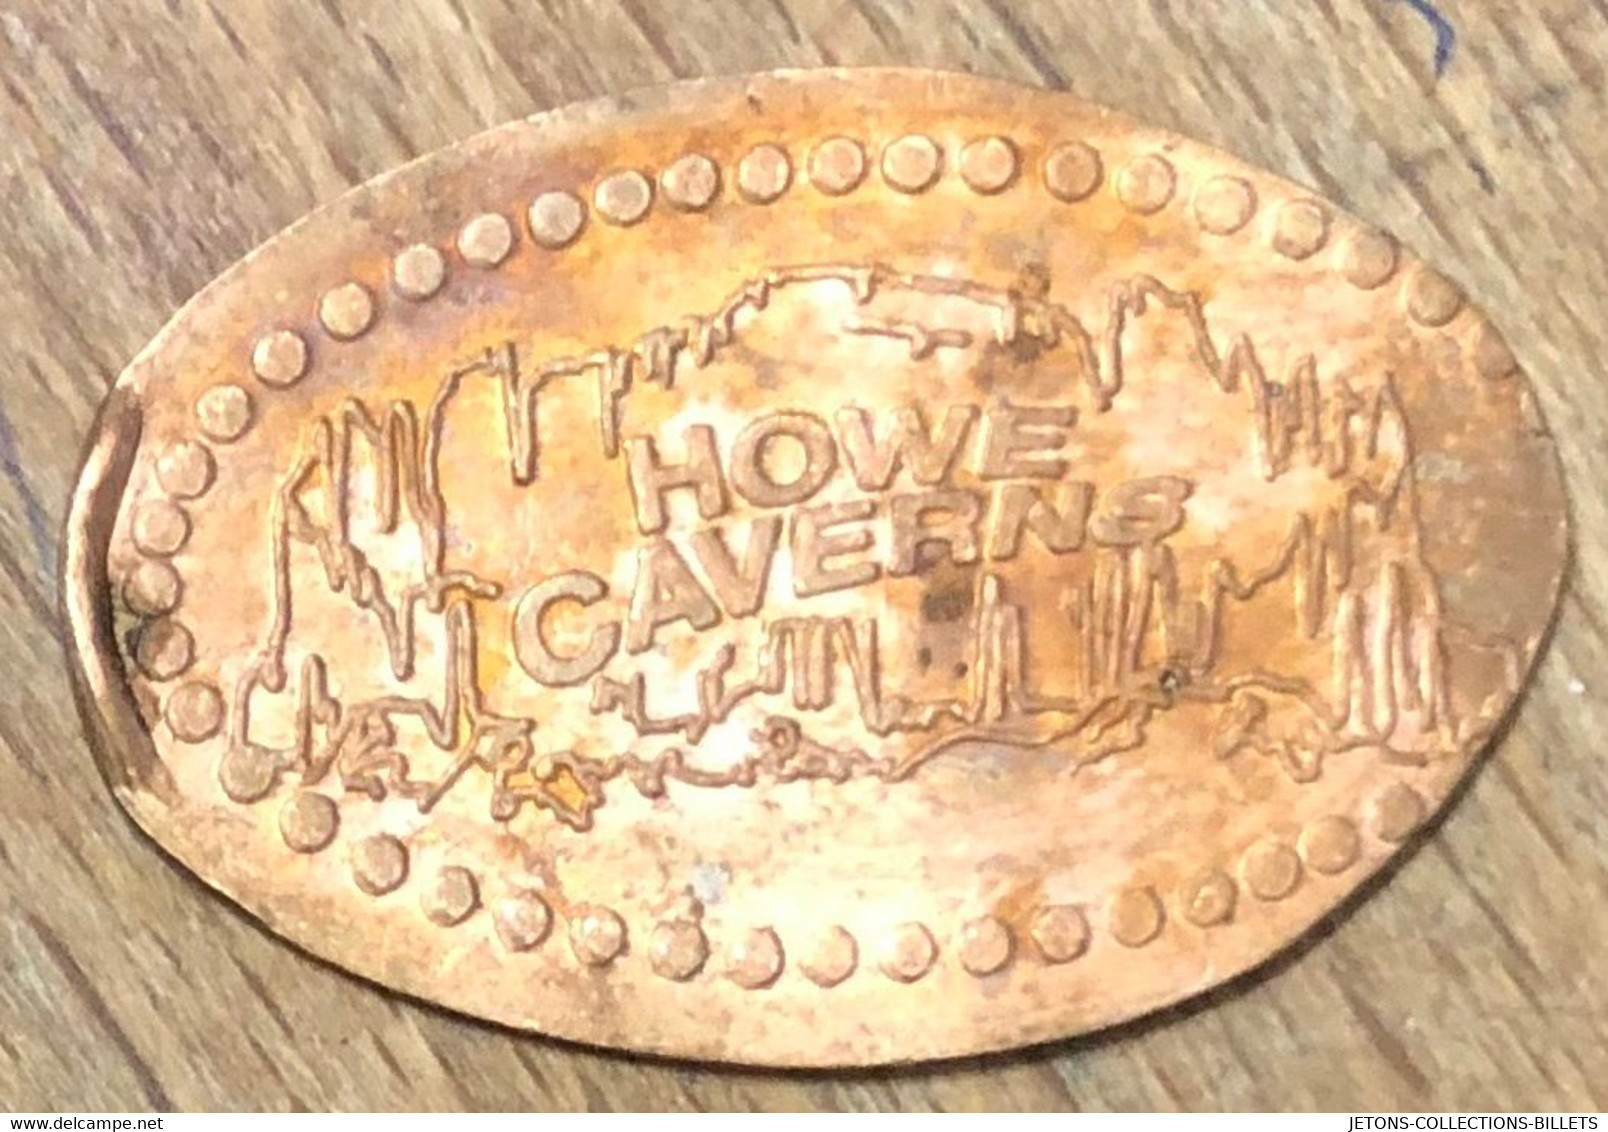 ÉTATS-UNIS USA HOWE CAVERNS PIÈCE ÉCRASÉE PENNY ELONGATED COIN MEDAILLE TOURISTIQUE MEDALS TOKENS - Monete Allungate (penny Souvenirs)